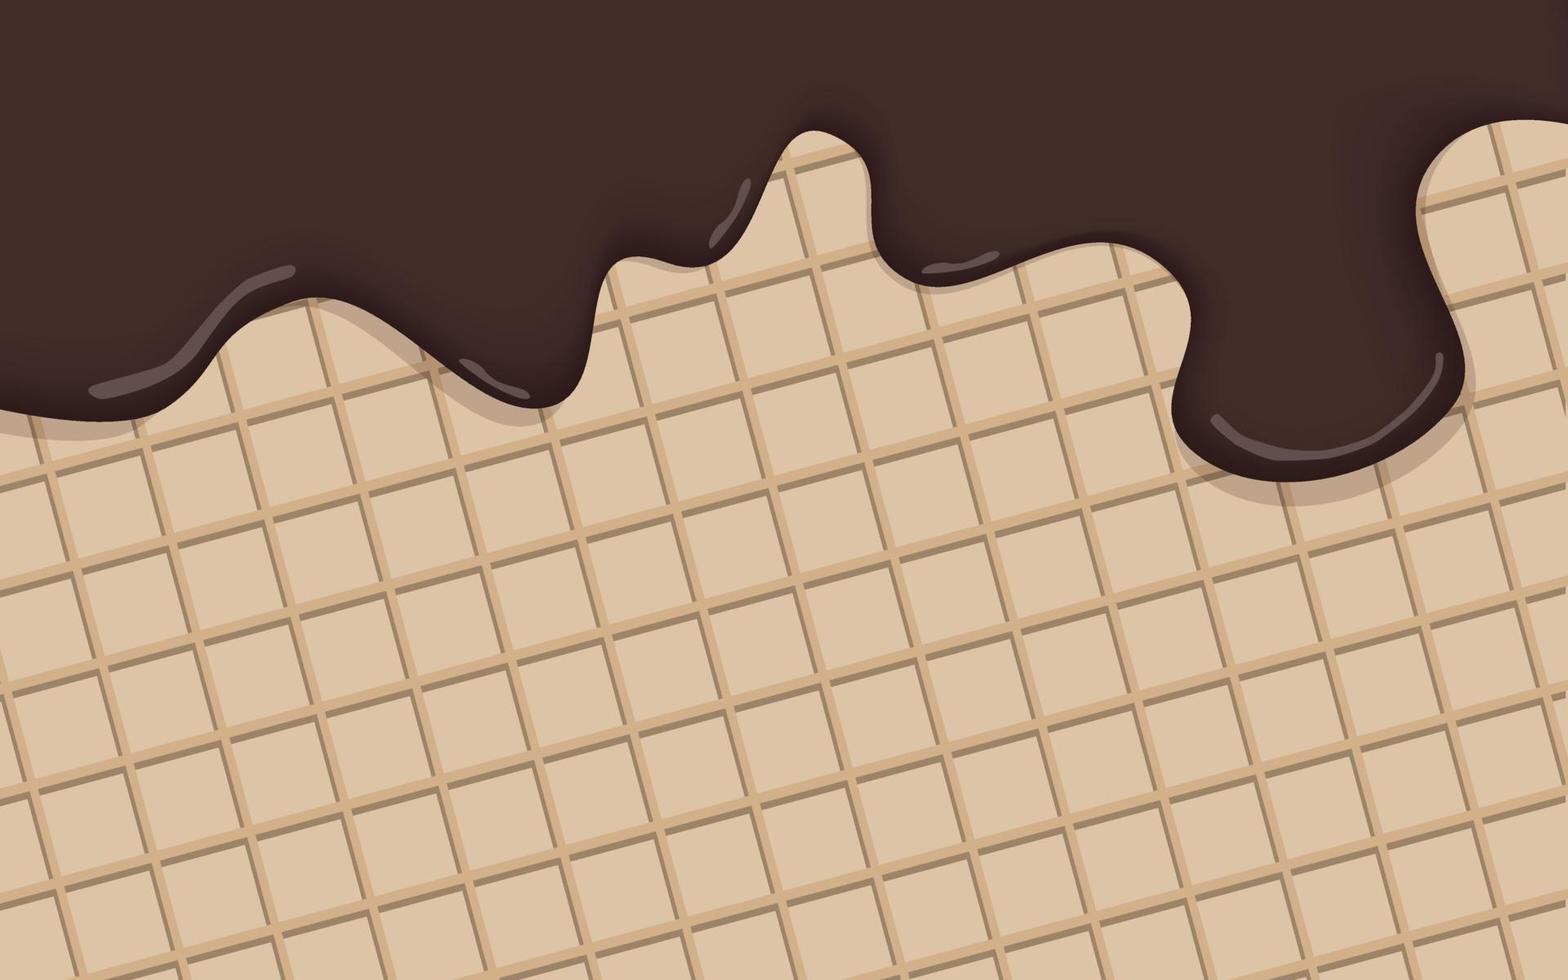 sorvete de chocolate realista derretido no vetor de fundo de cone de baunilha. creme de chocolate está derretendo na superfície do wafer. um modelo para menu doce ou comercial de publicidade.